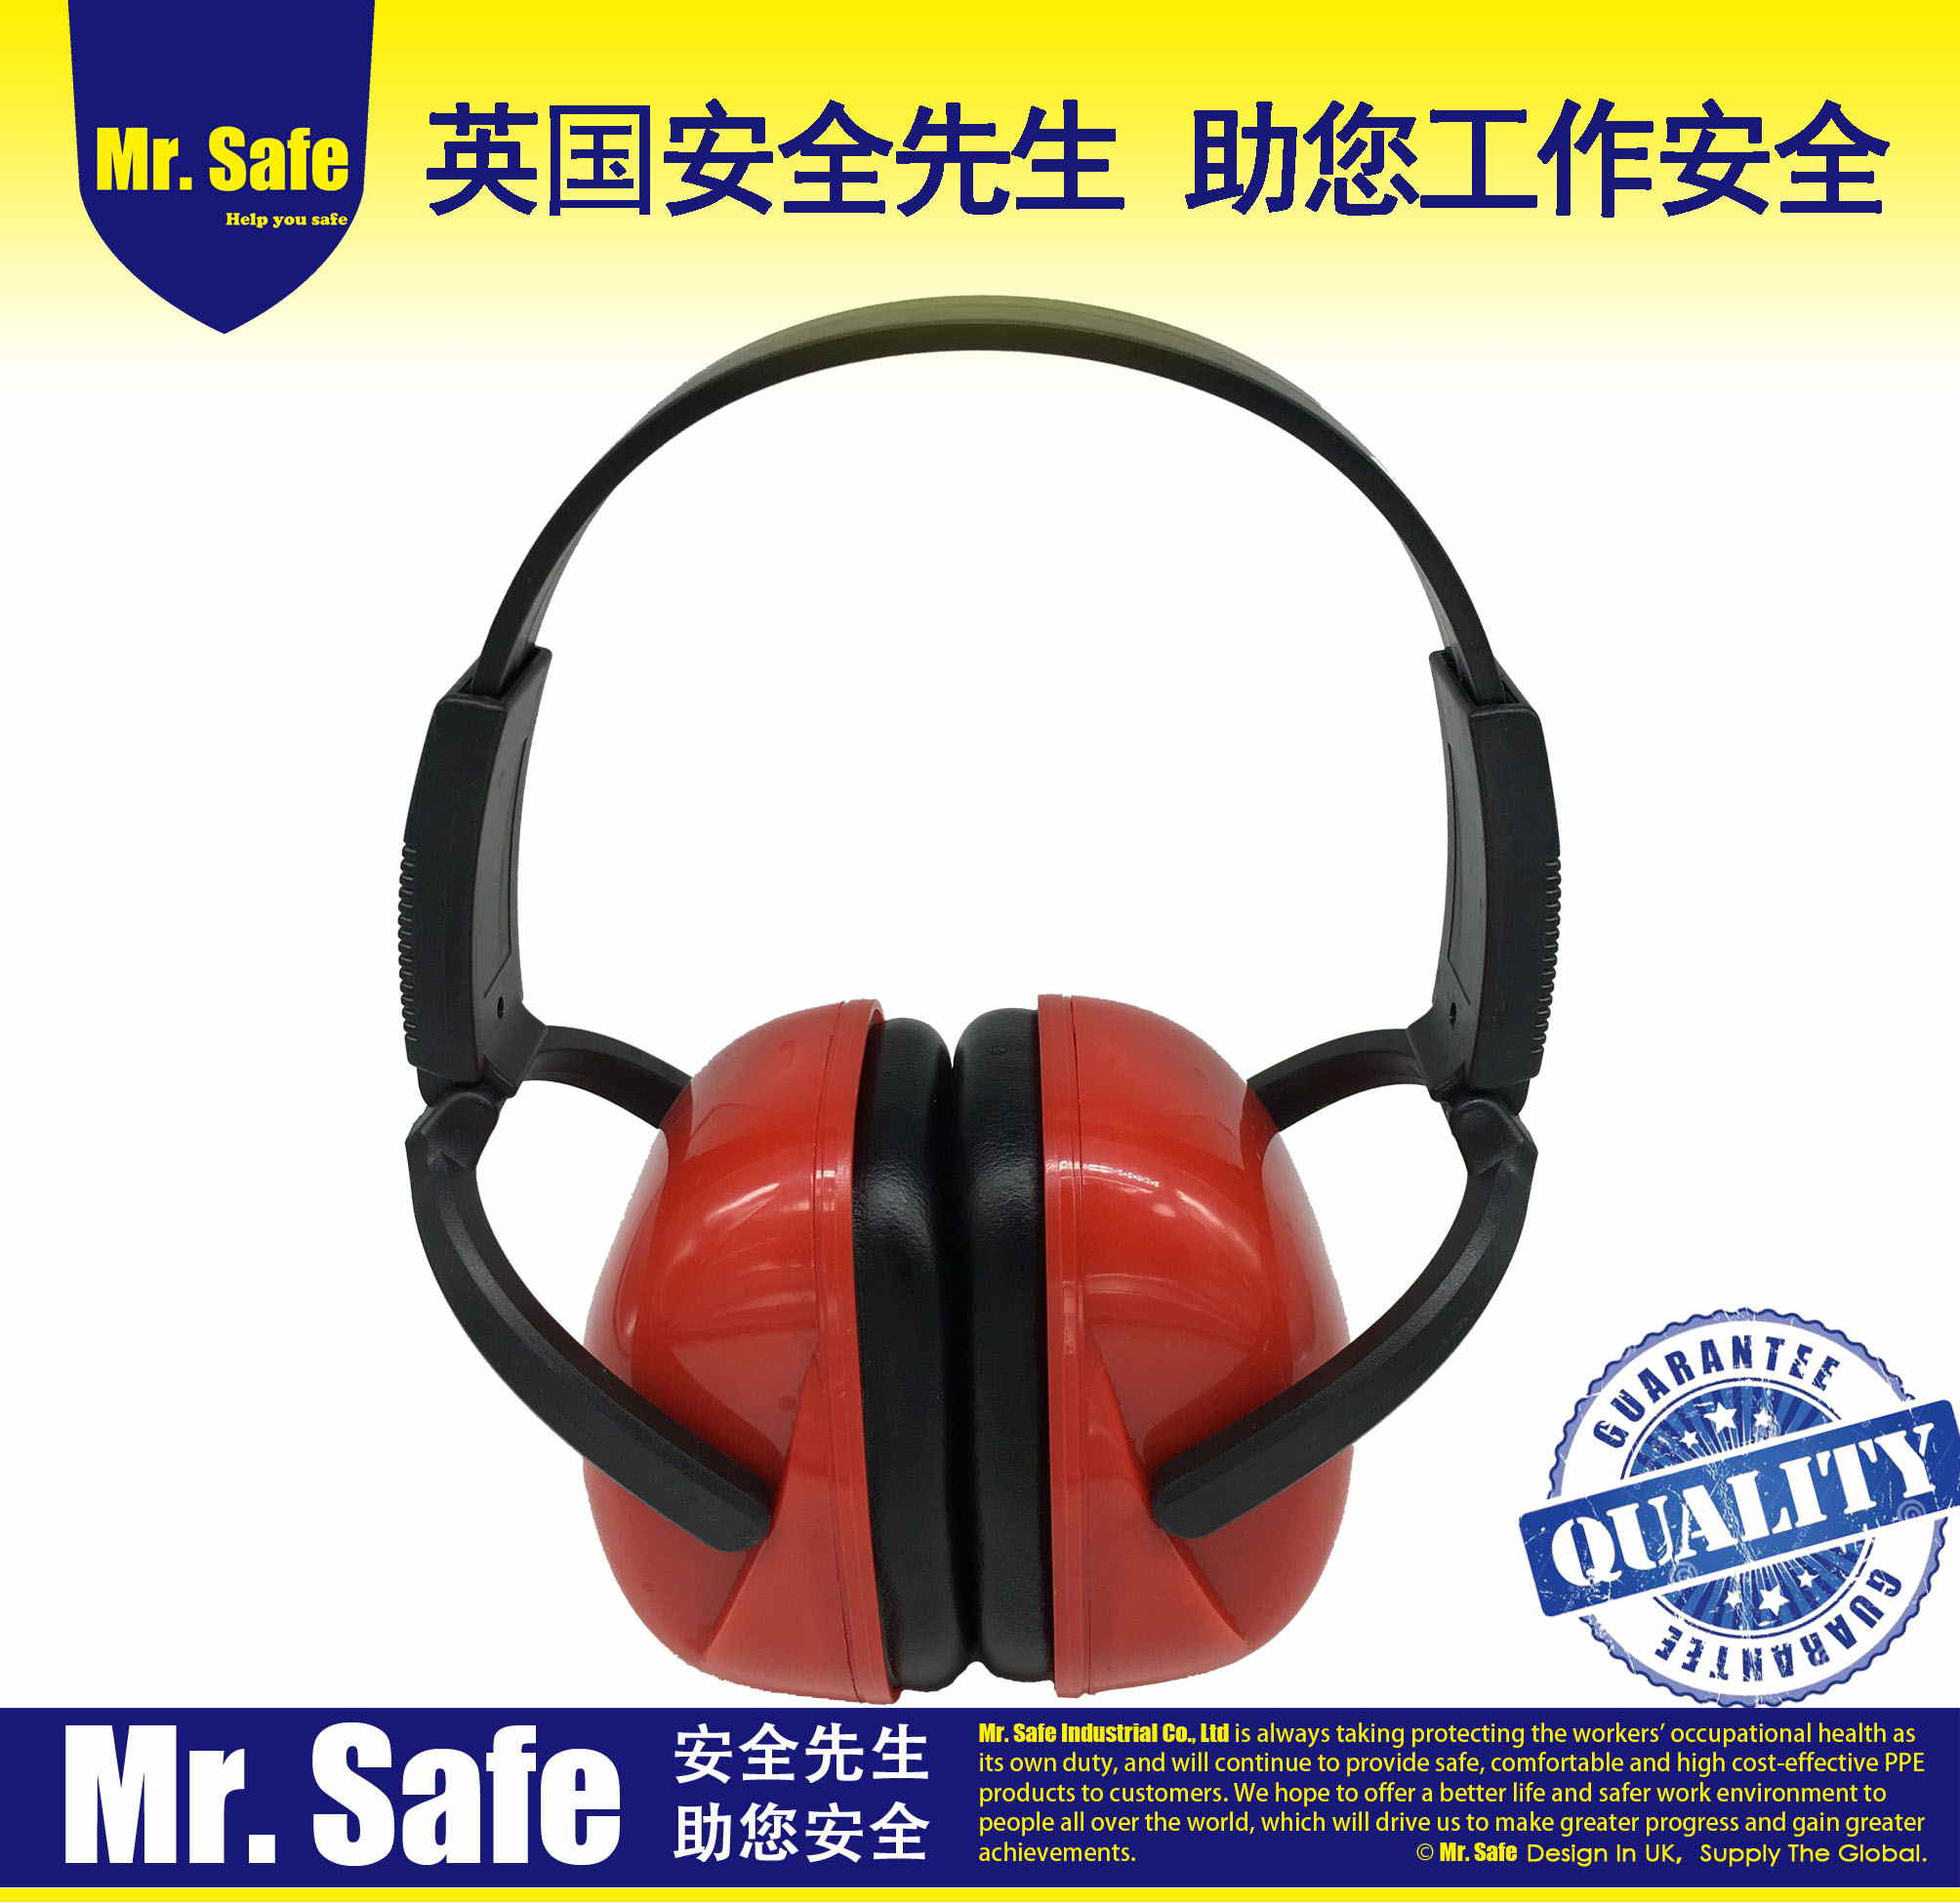 E6防噪音耳罩隔音护耳器防护耳罩